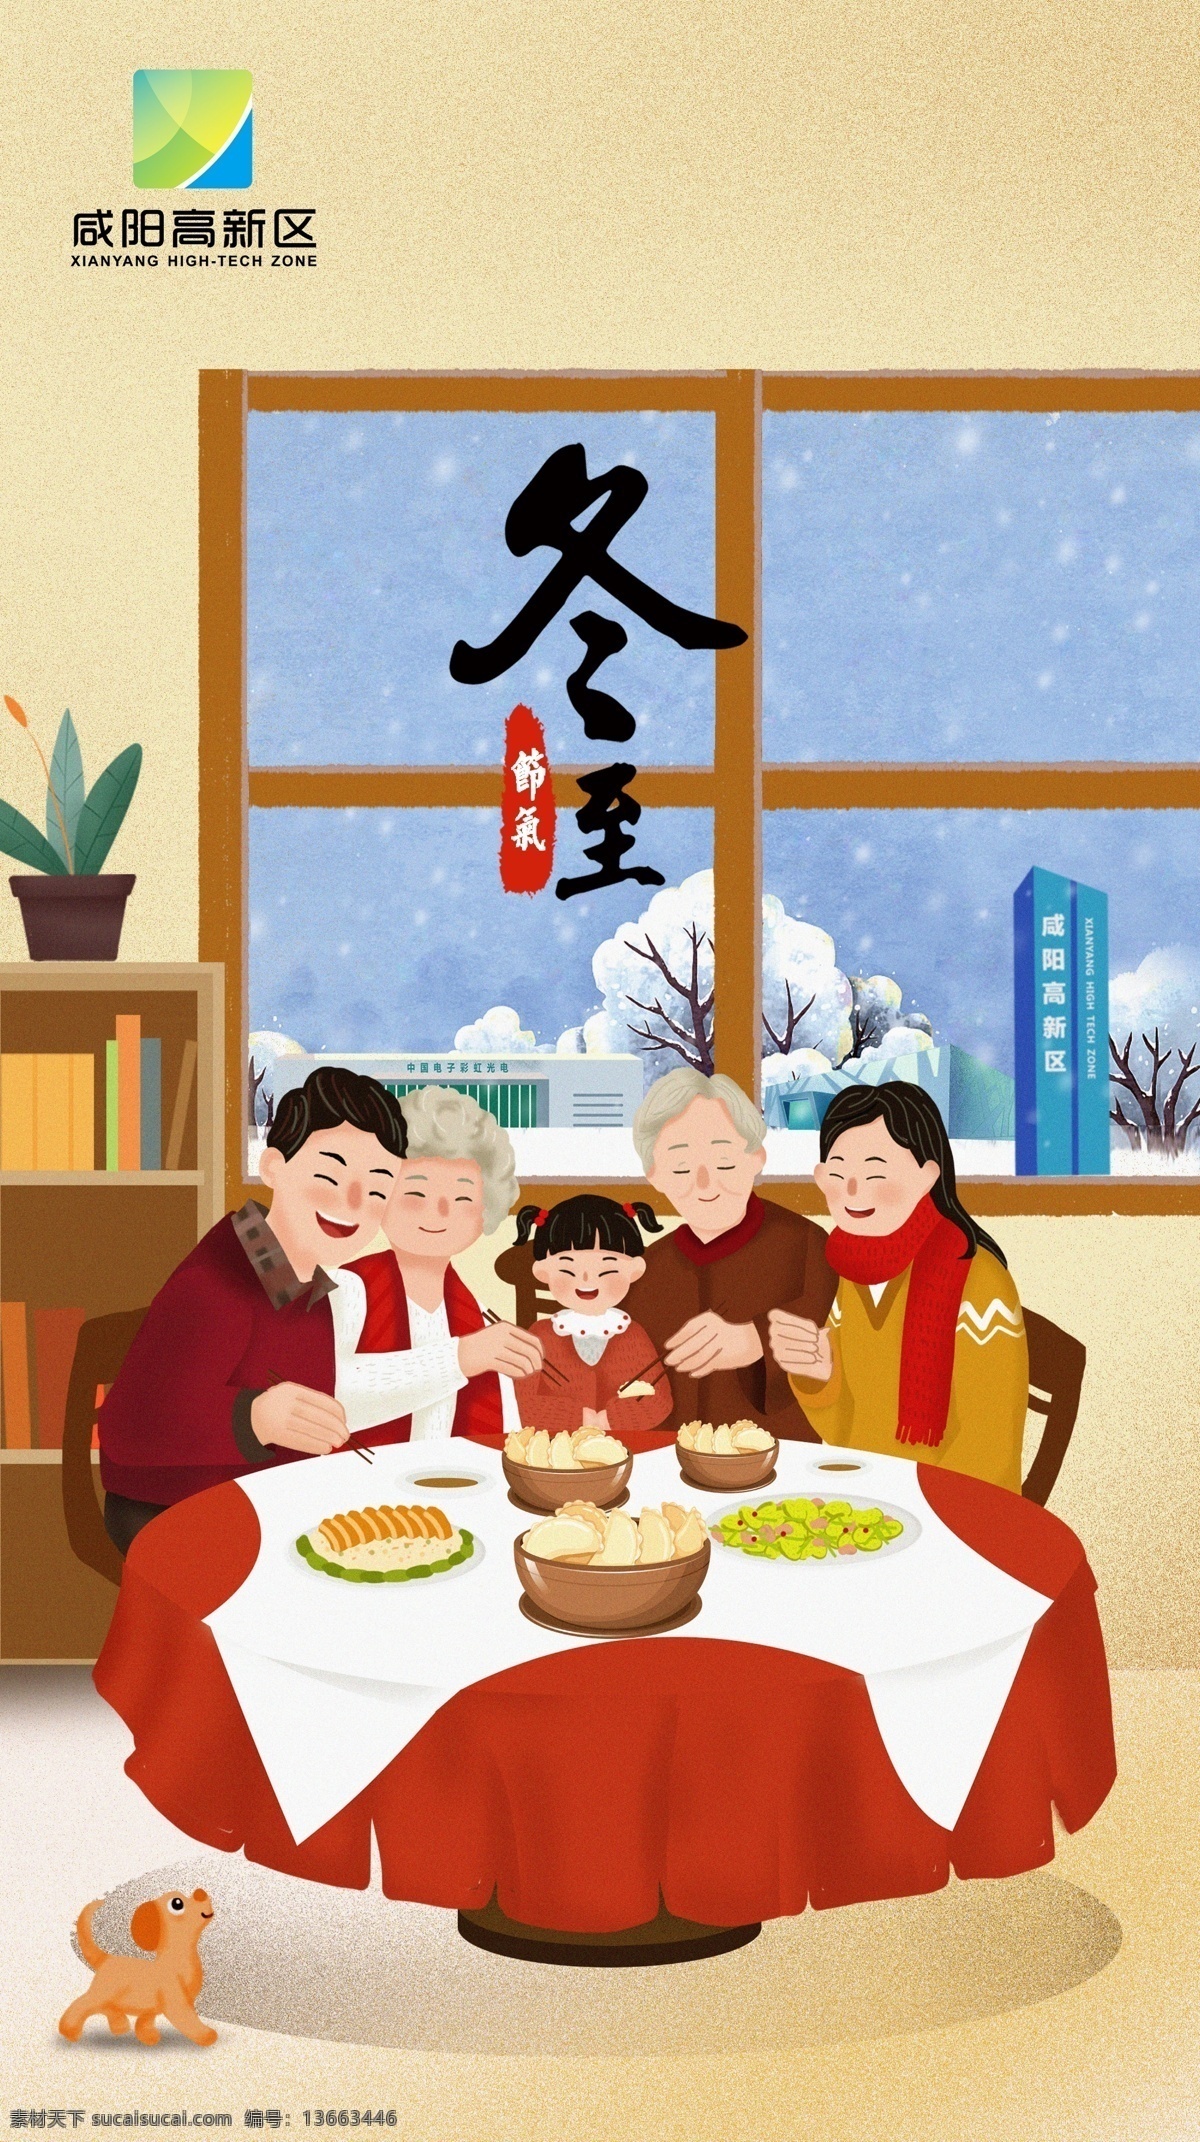 冬天 吃 饺子 冬至 立冬 下雪 吃饺子 团圆 吃饭